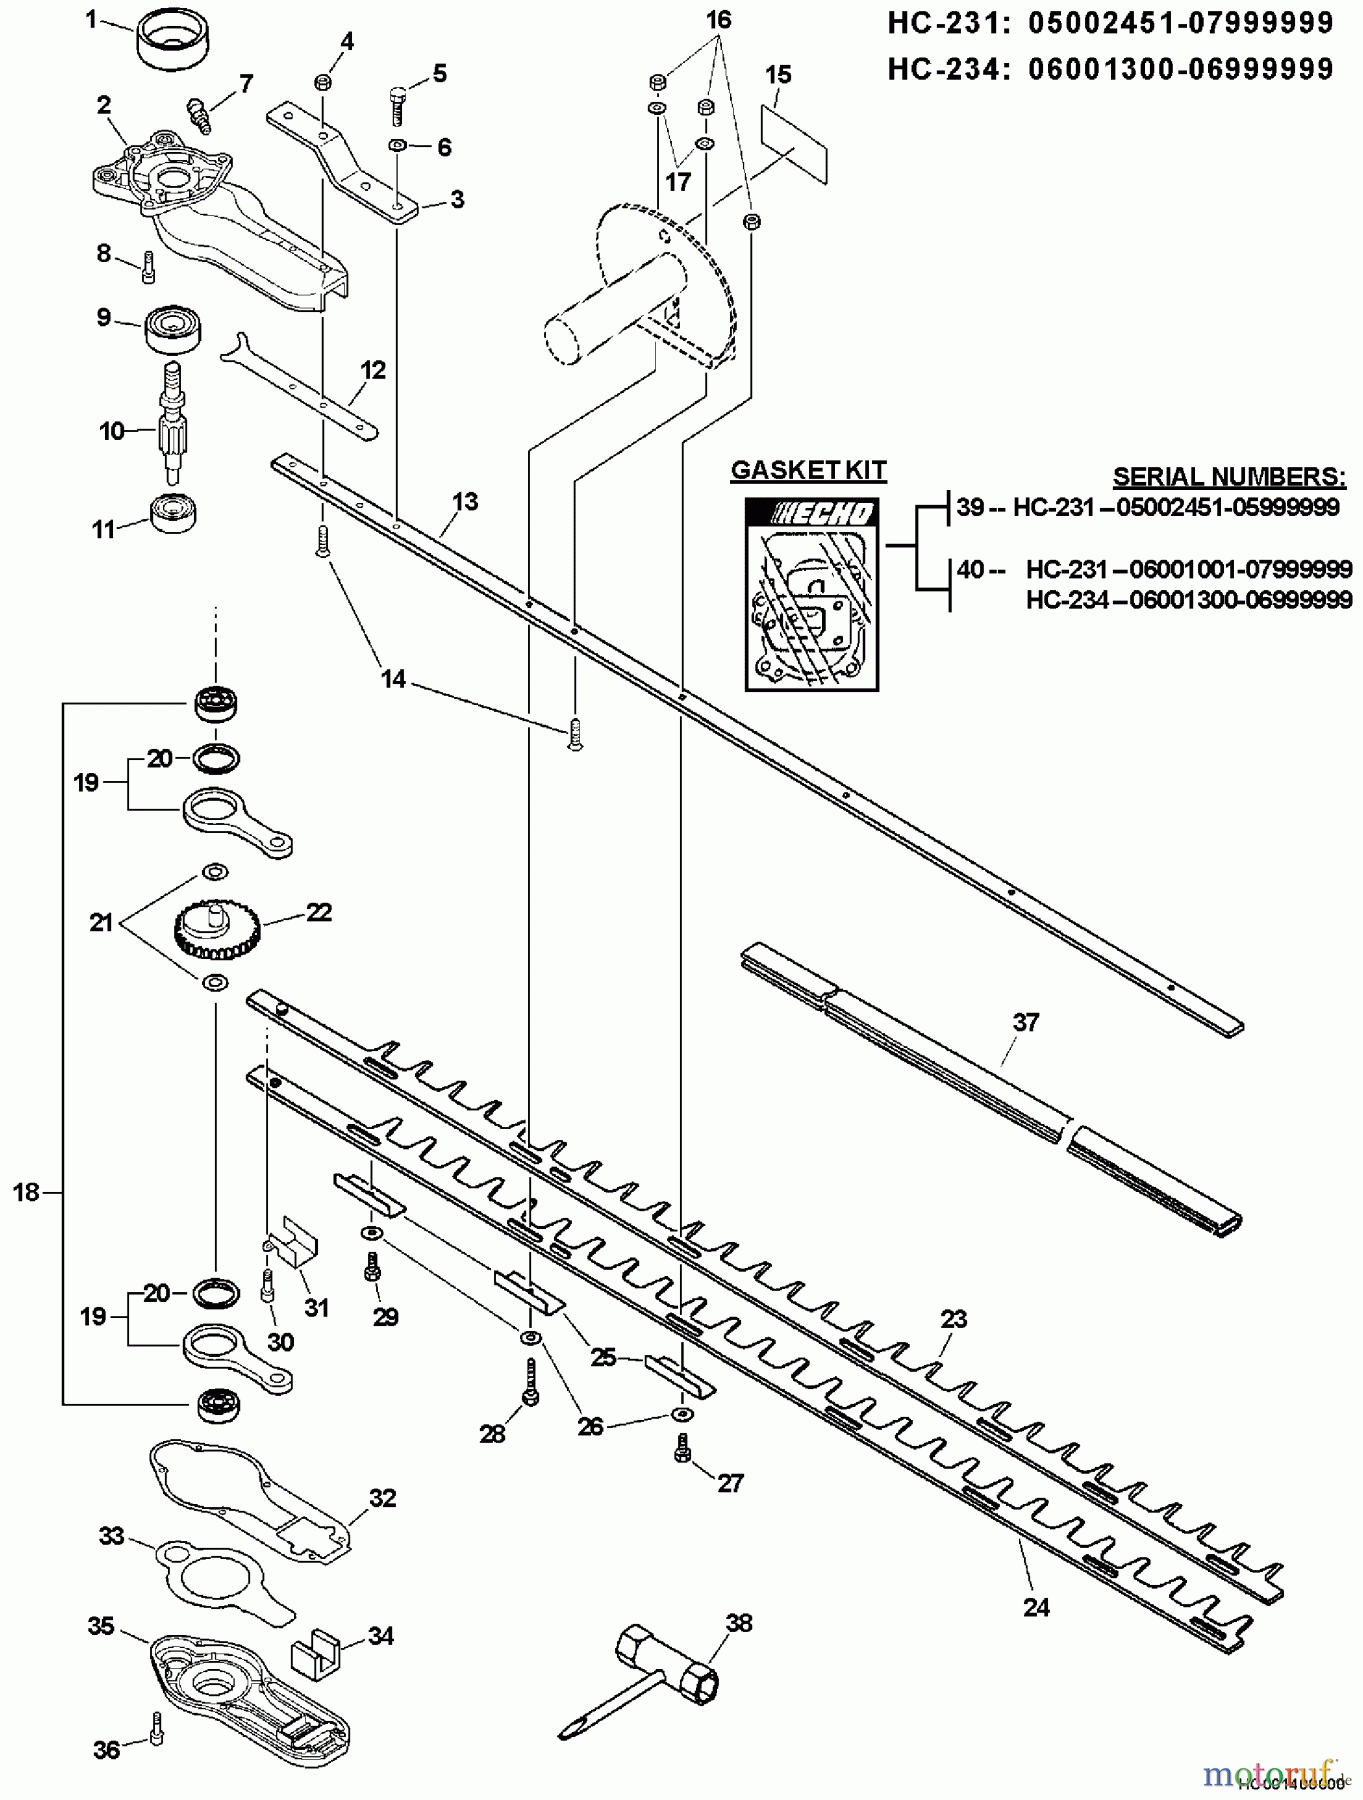  Echo Heckenscheren HC-231 - Echo Hedge Trimmer, S/N: 07001001 - 07999999 Blades, Gear Case, Side Handle, Tools